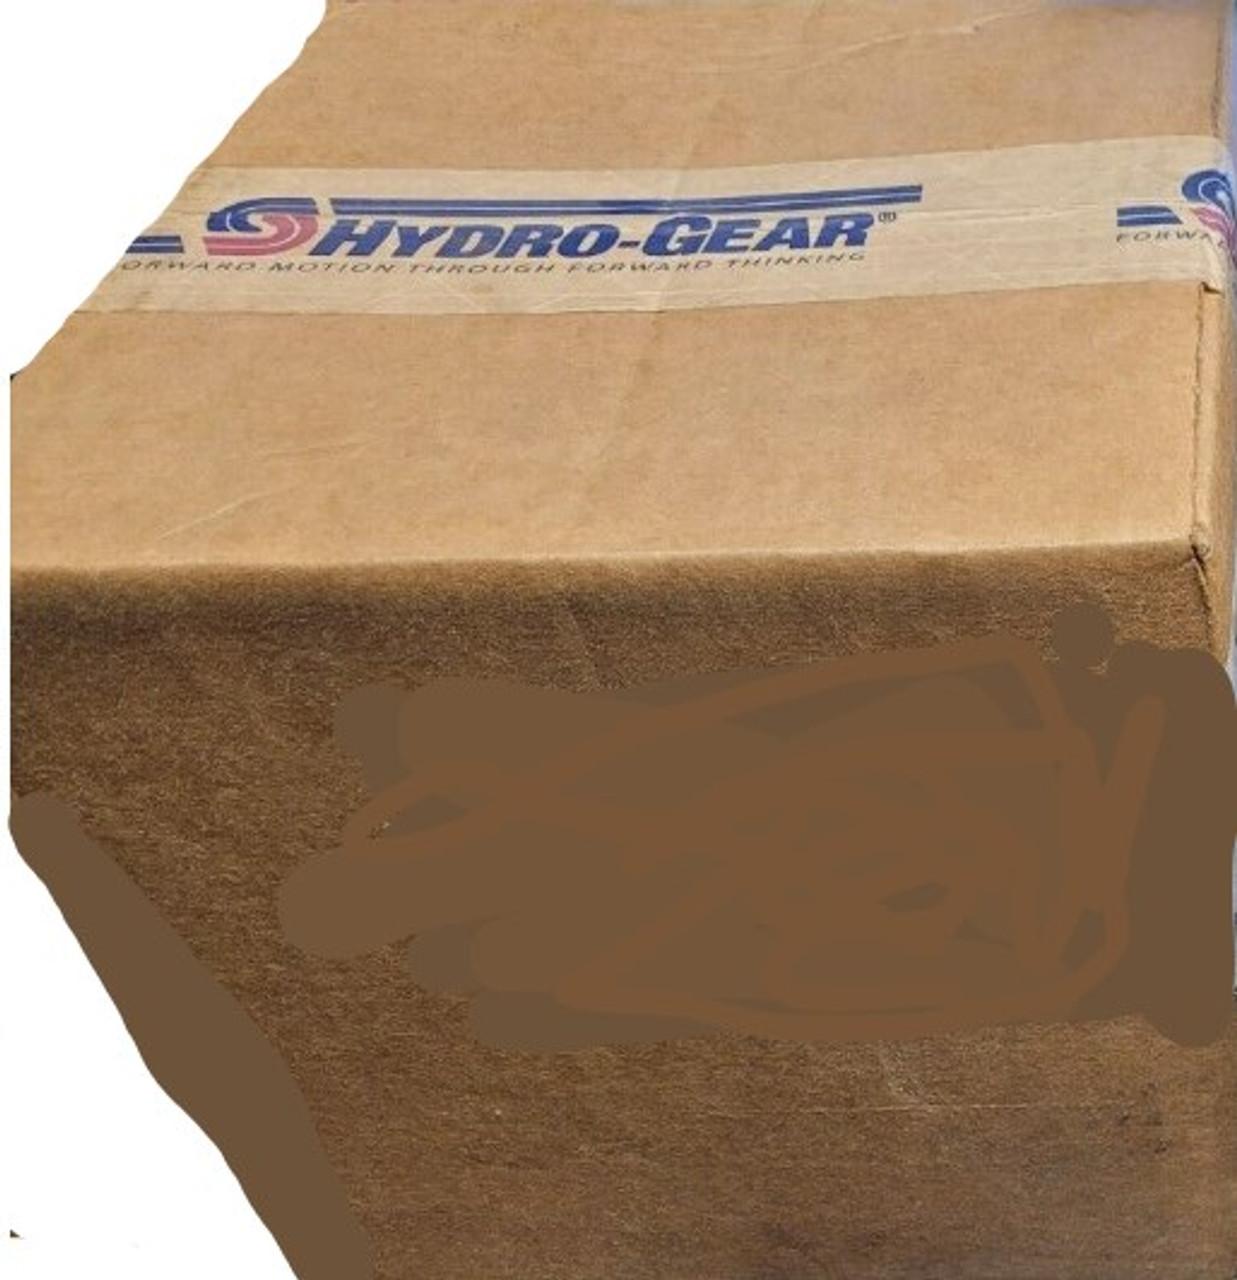 Hyrdo-Gear PR-2JBC-GY1E-XXXX Pump package std